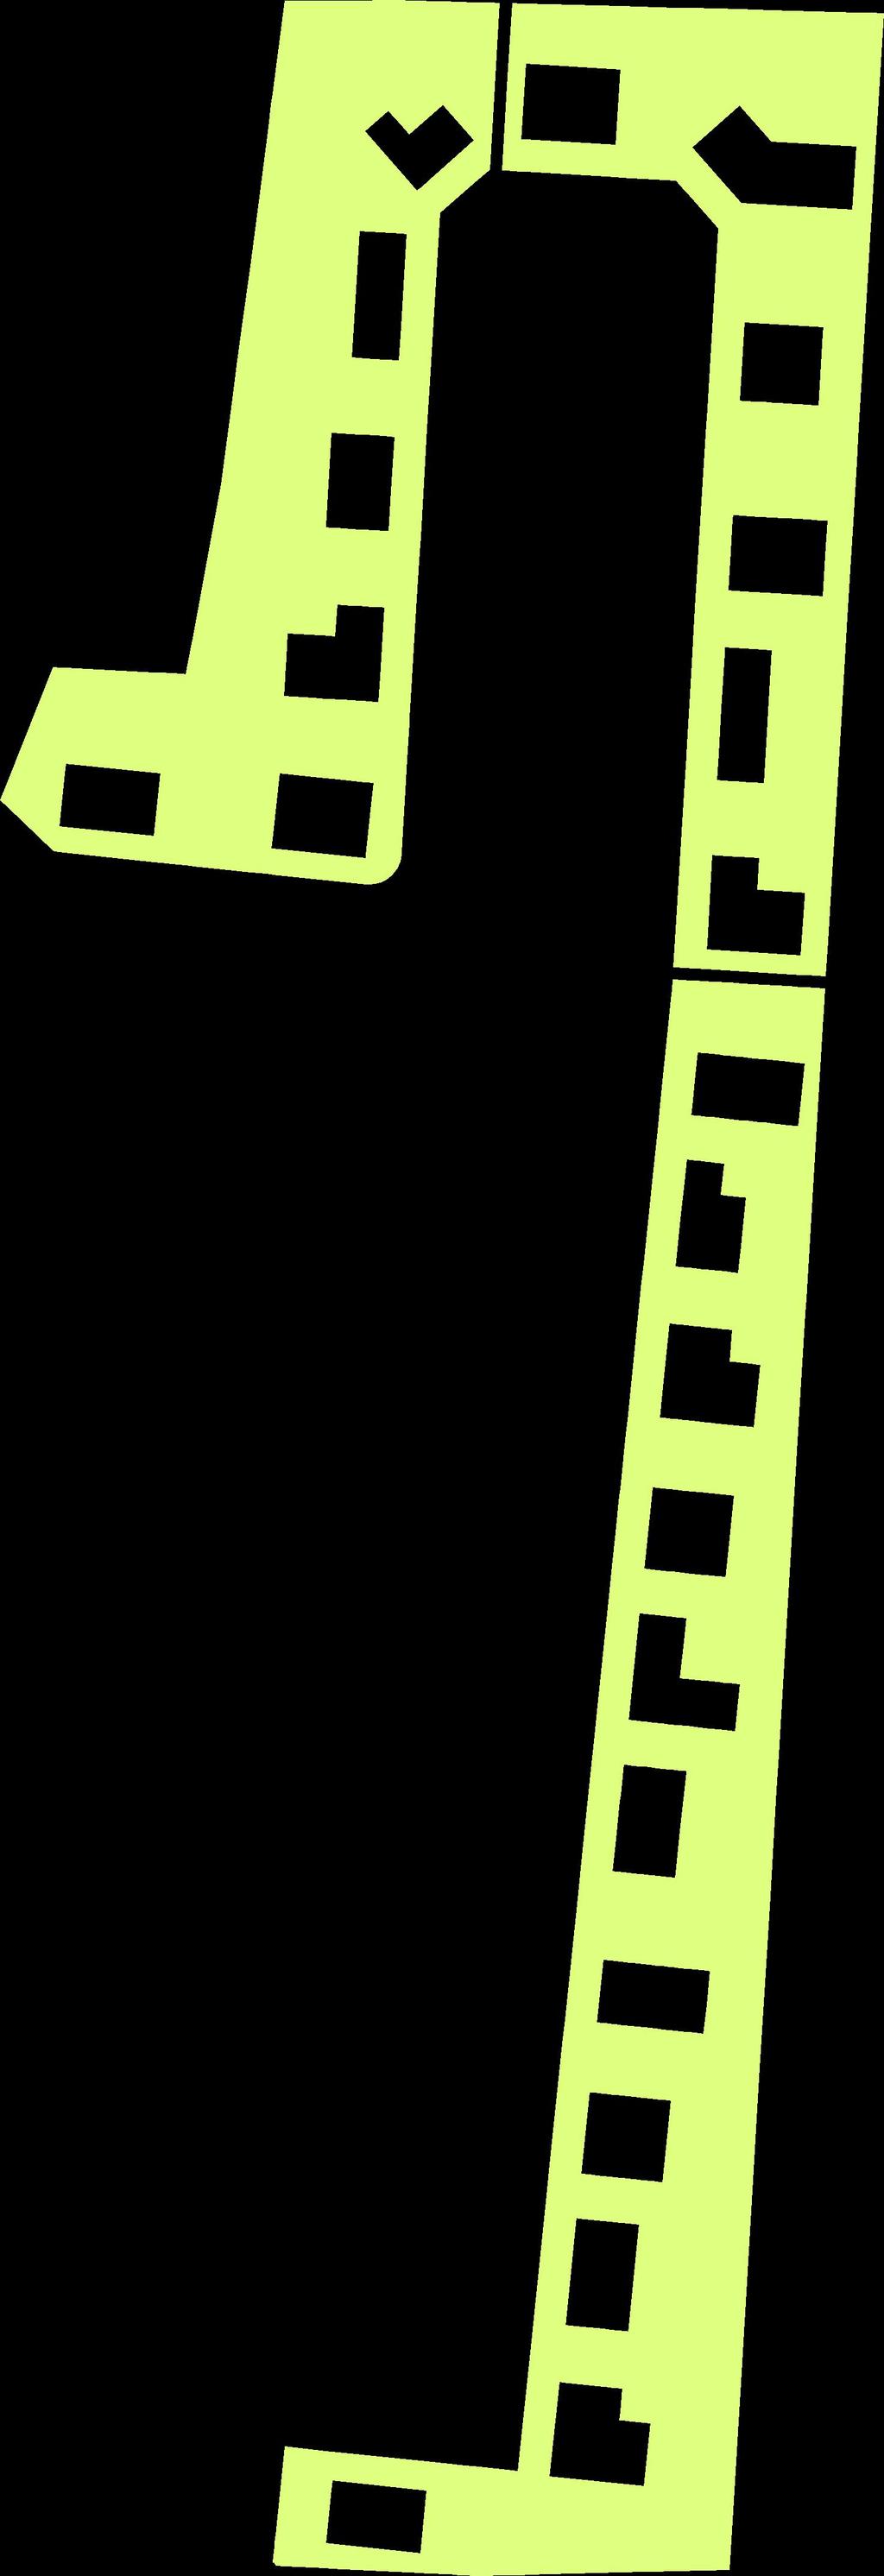 etapa (s vyznačením začátku a konce úseku) Pěší doprava - chodníky Směr dopravy - obousměrný dvoupruhový Směr dopravy - obousměrný jednopruhový Zpomalovací